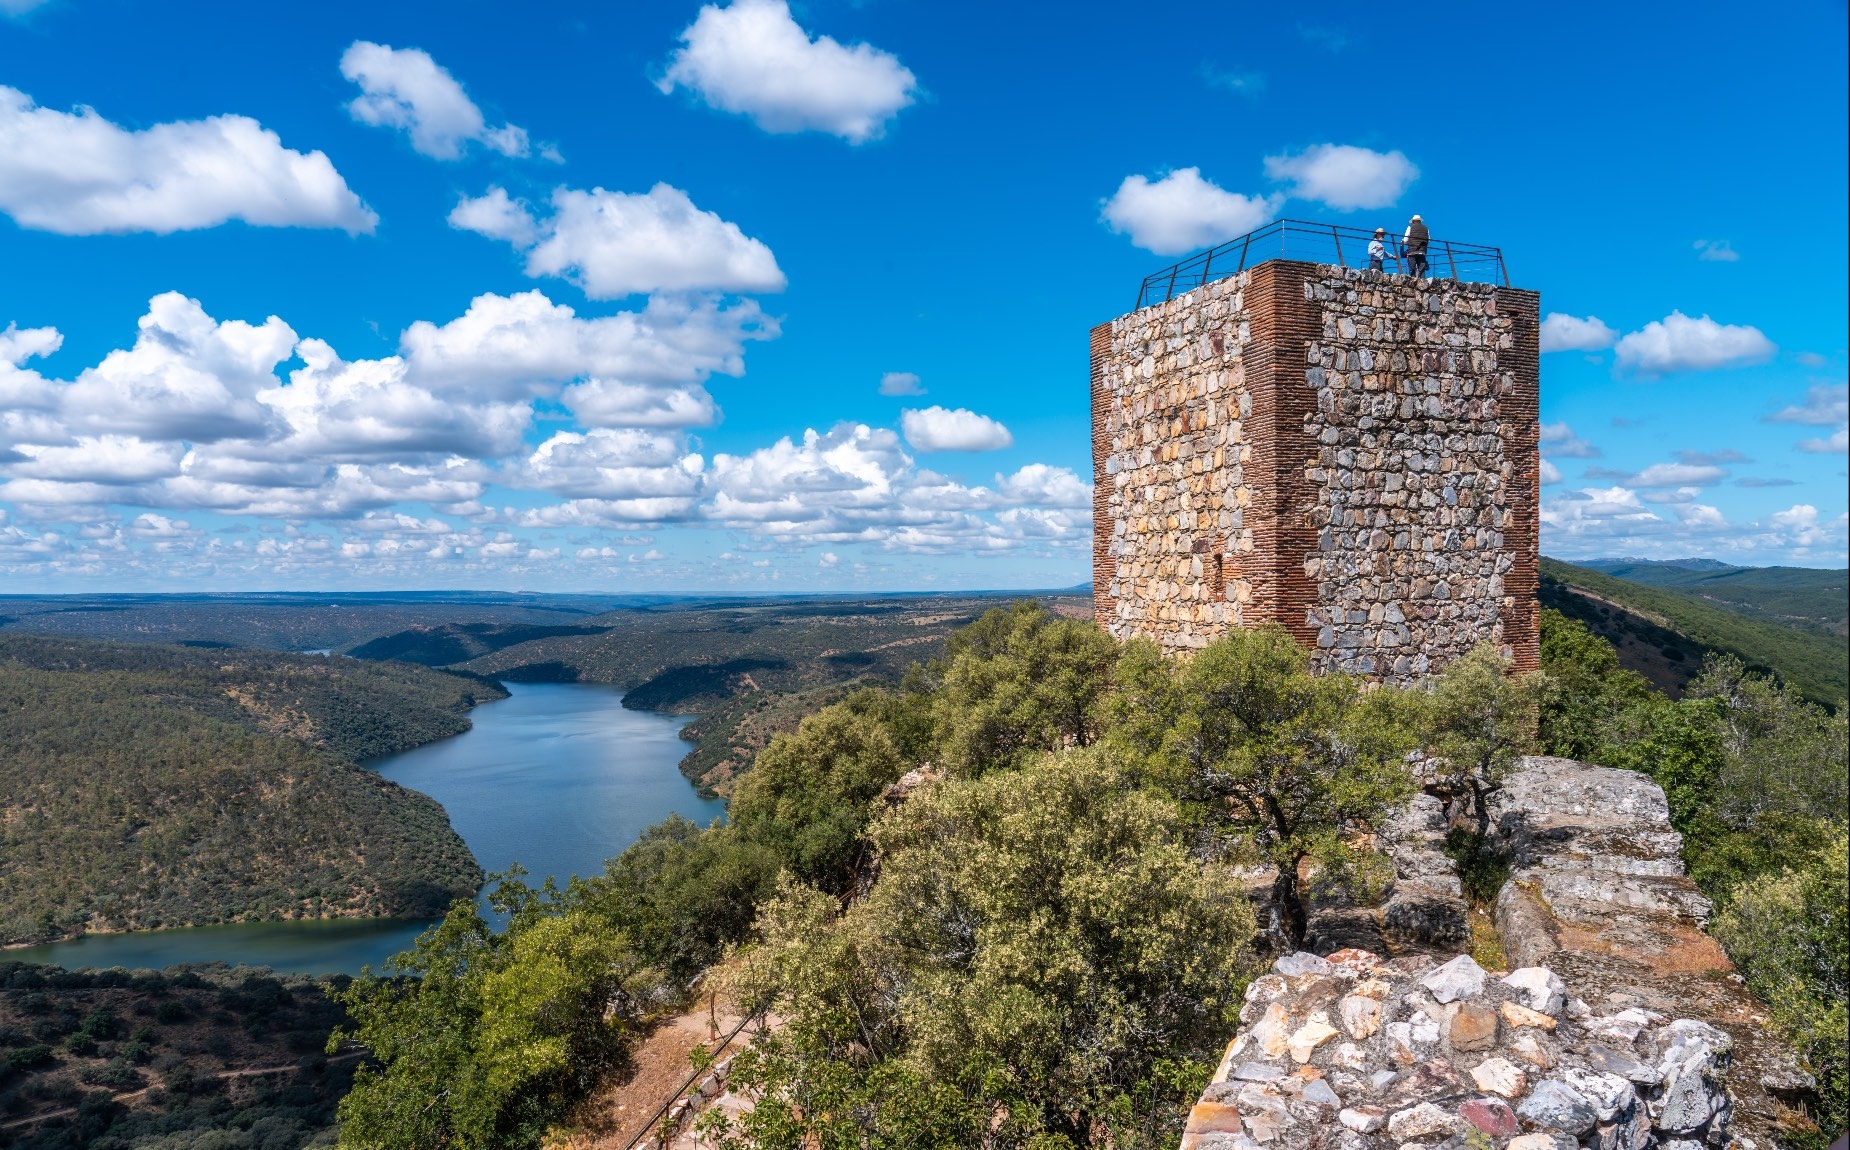 Vista De la Torre m&aacute;s alta del castillo, desde donde los turistas pueden contemplar todo el parque.